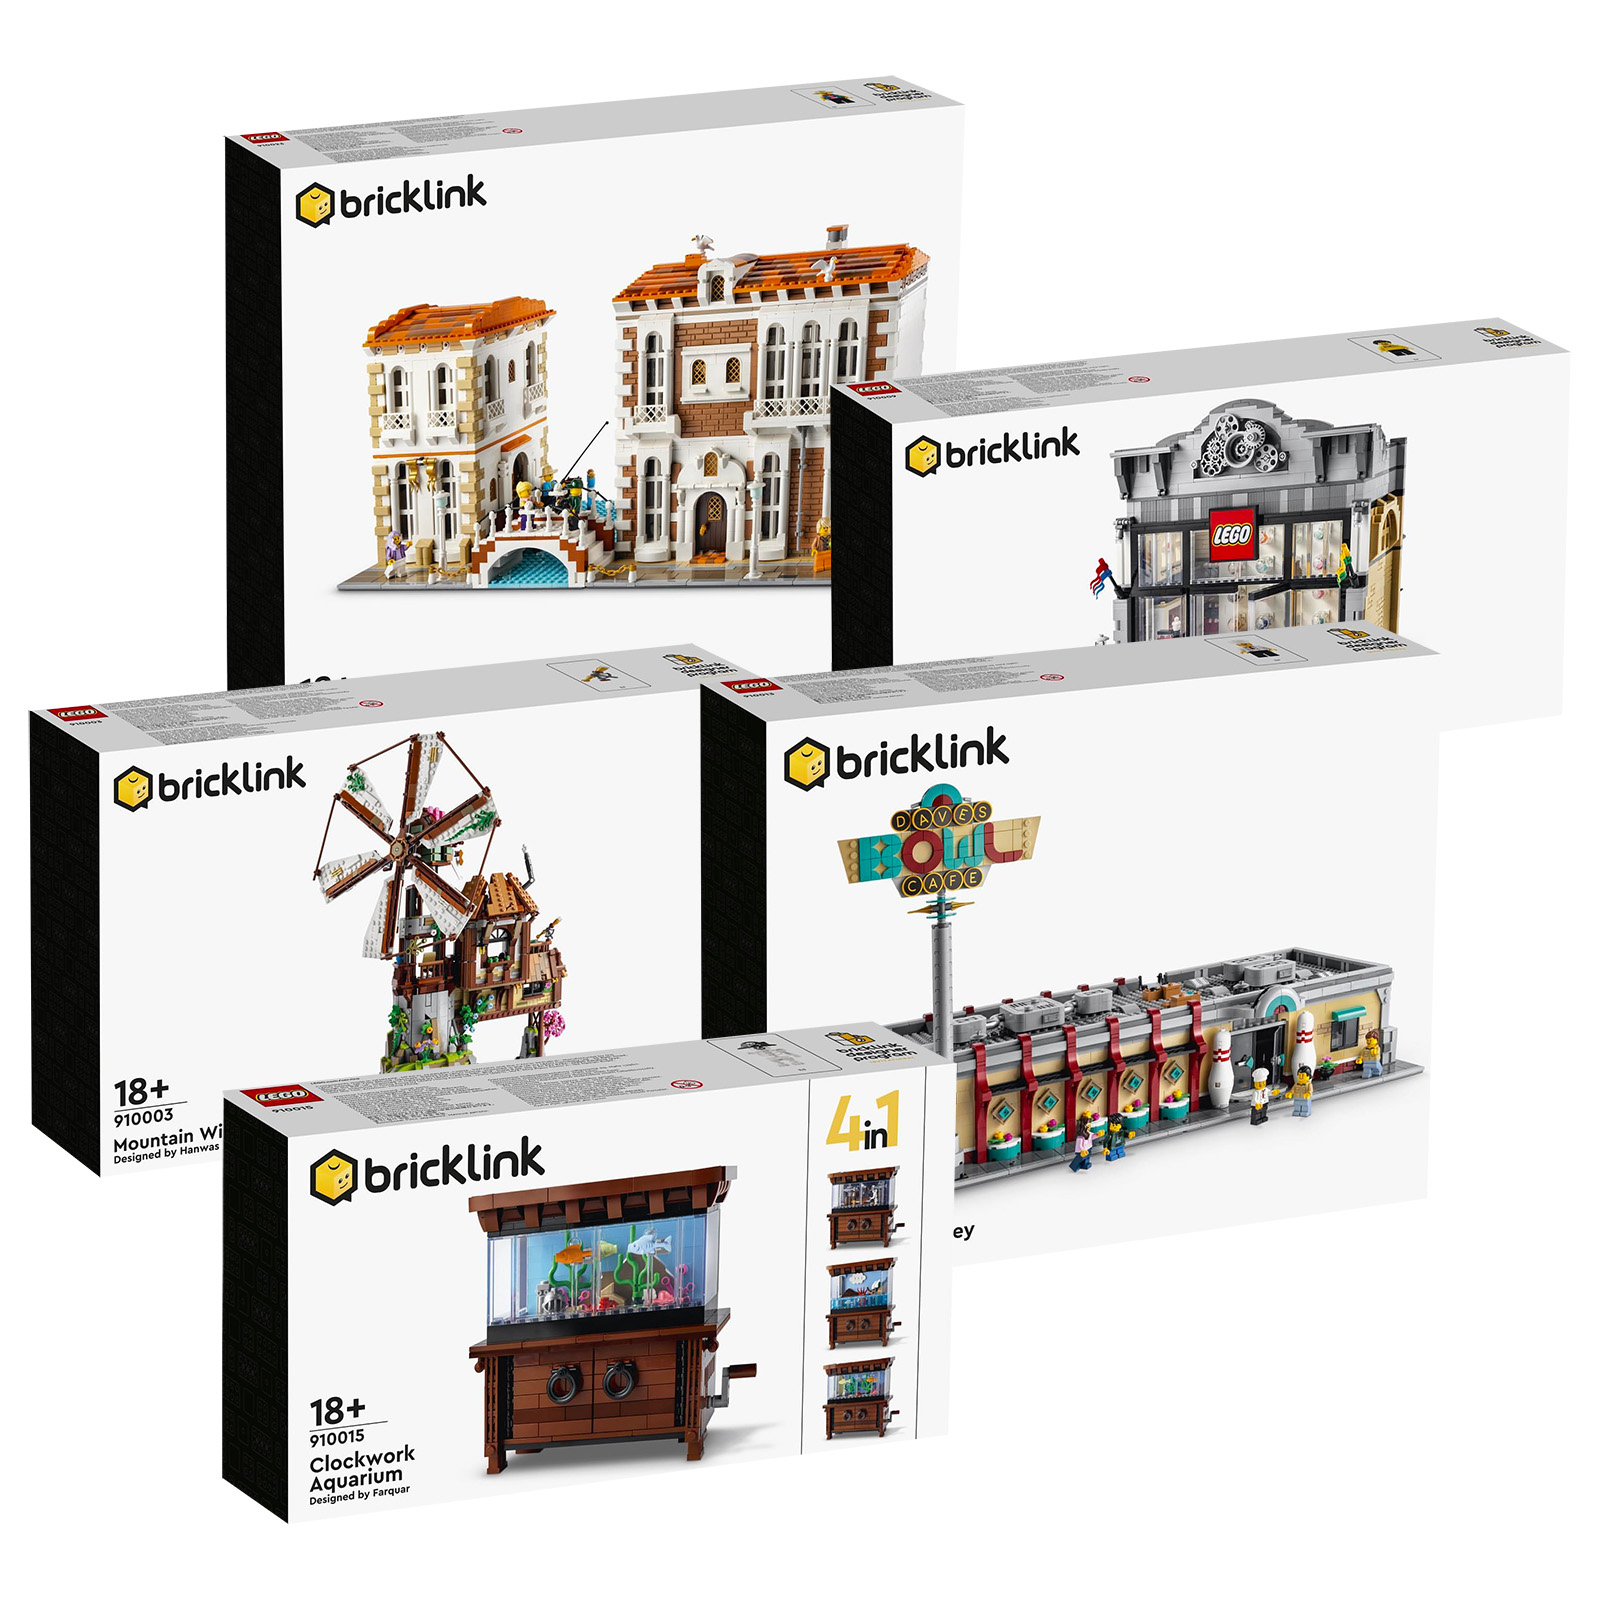 Bricklink Designer Program 2021: i visual ufficiali dei set scaturiti dalla 2° fase di crowdfunding